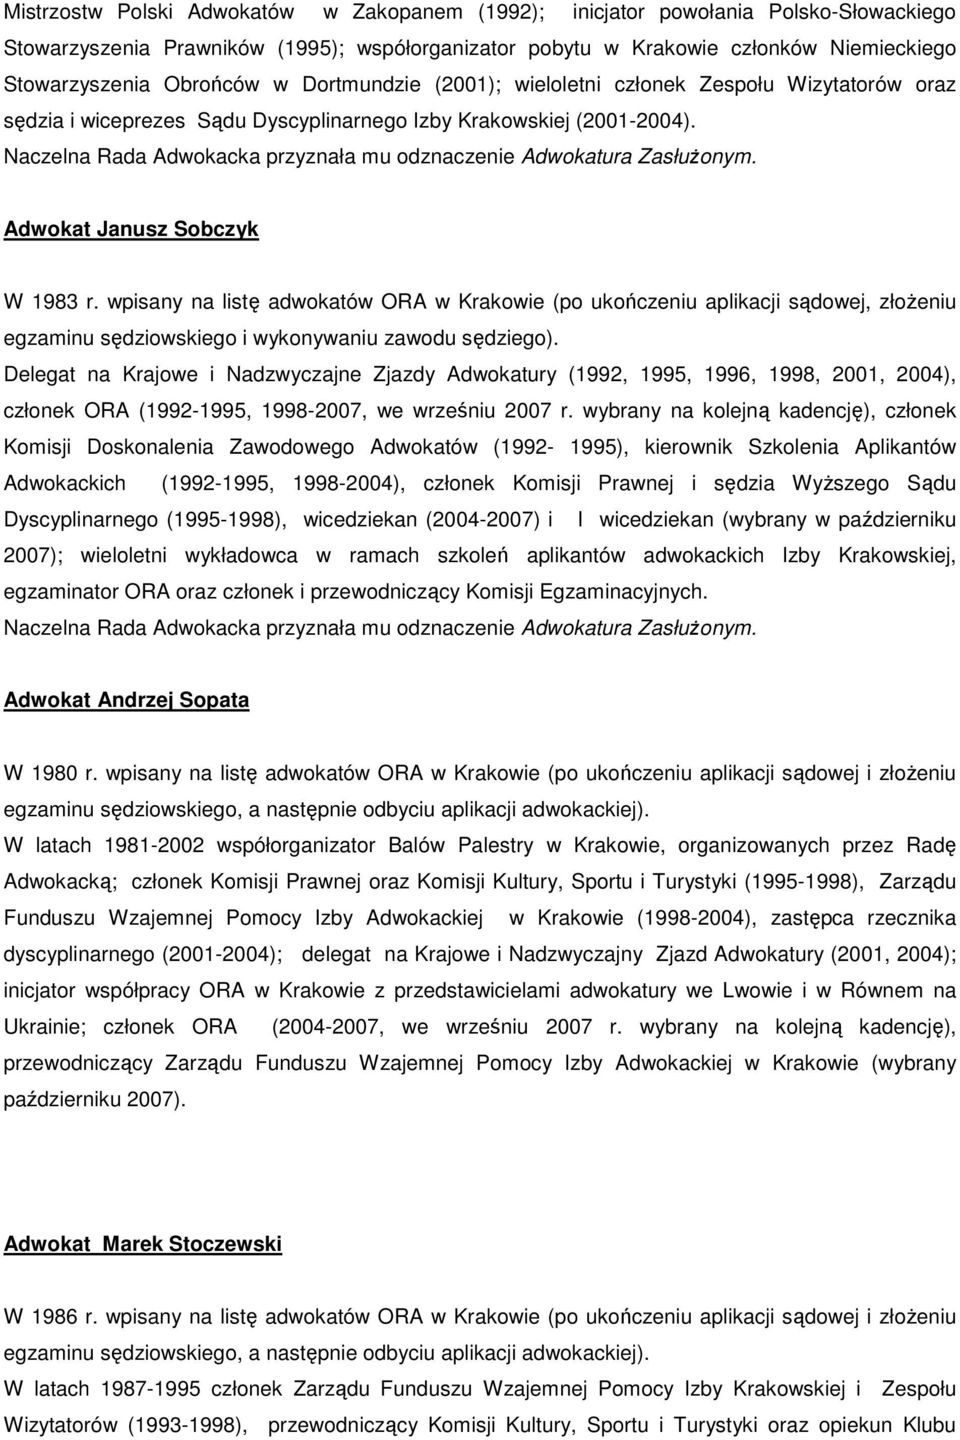 wpisany na listę adwokatów ORA w Krakowie (po ukończeniu aplikacji sądowej, złoŝeniu egzaminu sędziowskiego i wykonywaniu zawodu sędziego).